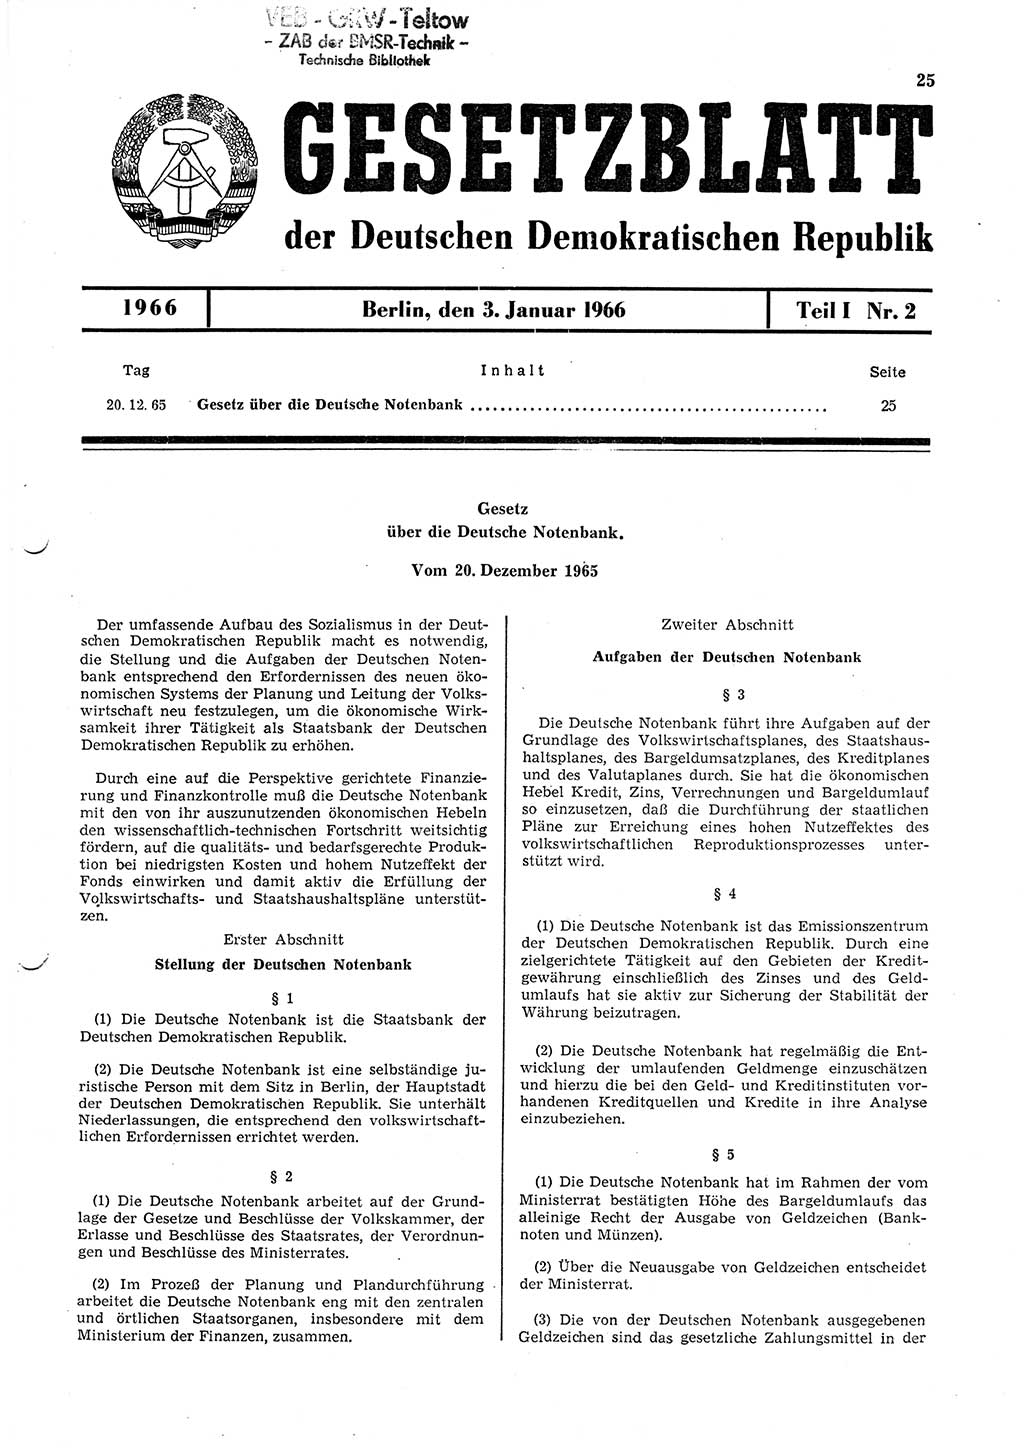 Gesetzblatt (GBl.) der Deutschen Demokratischen Republik (DDR) Teil Ⅰ 1966, Seite 25 (GBl. DDR Ⅰ 1966, S. 25)